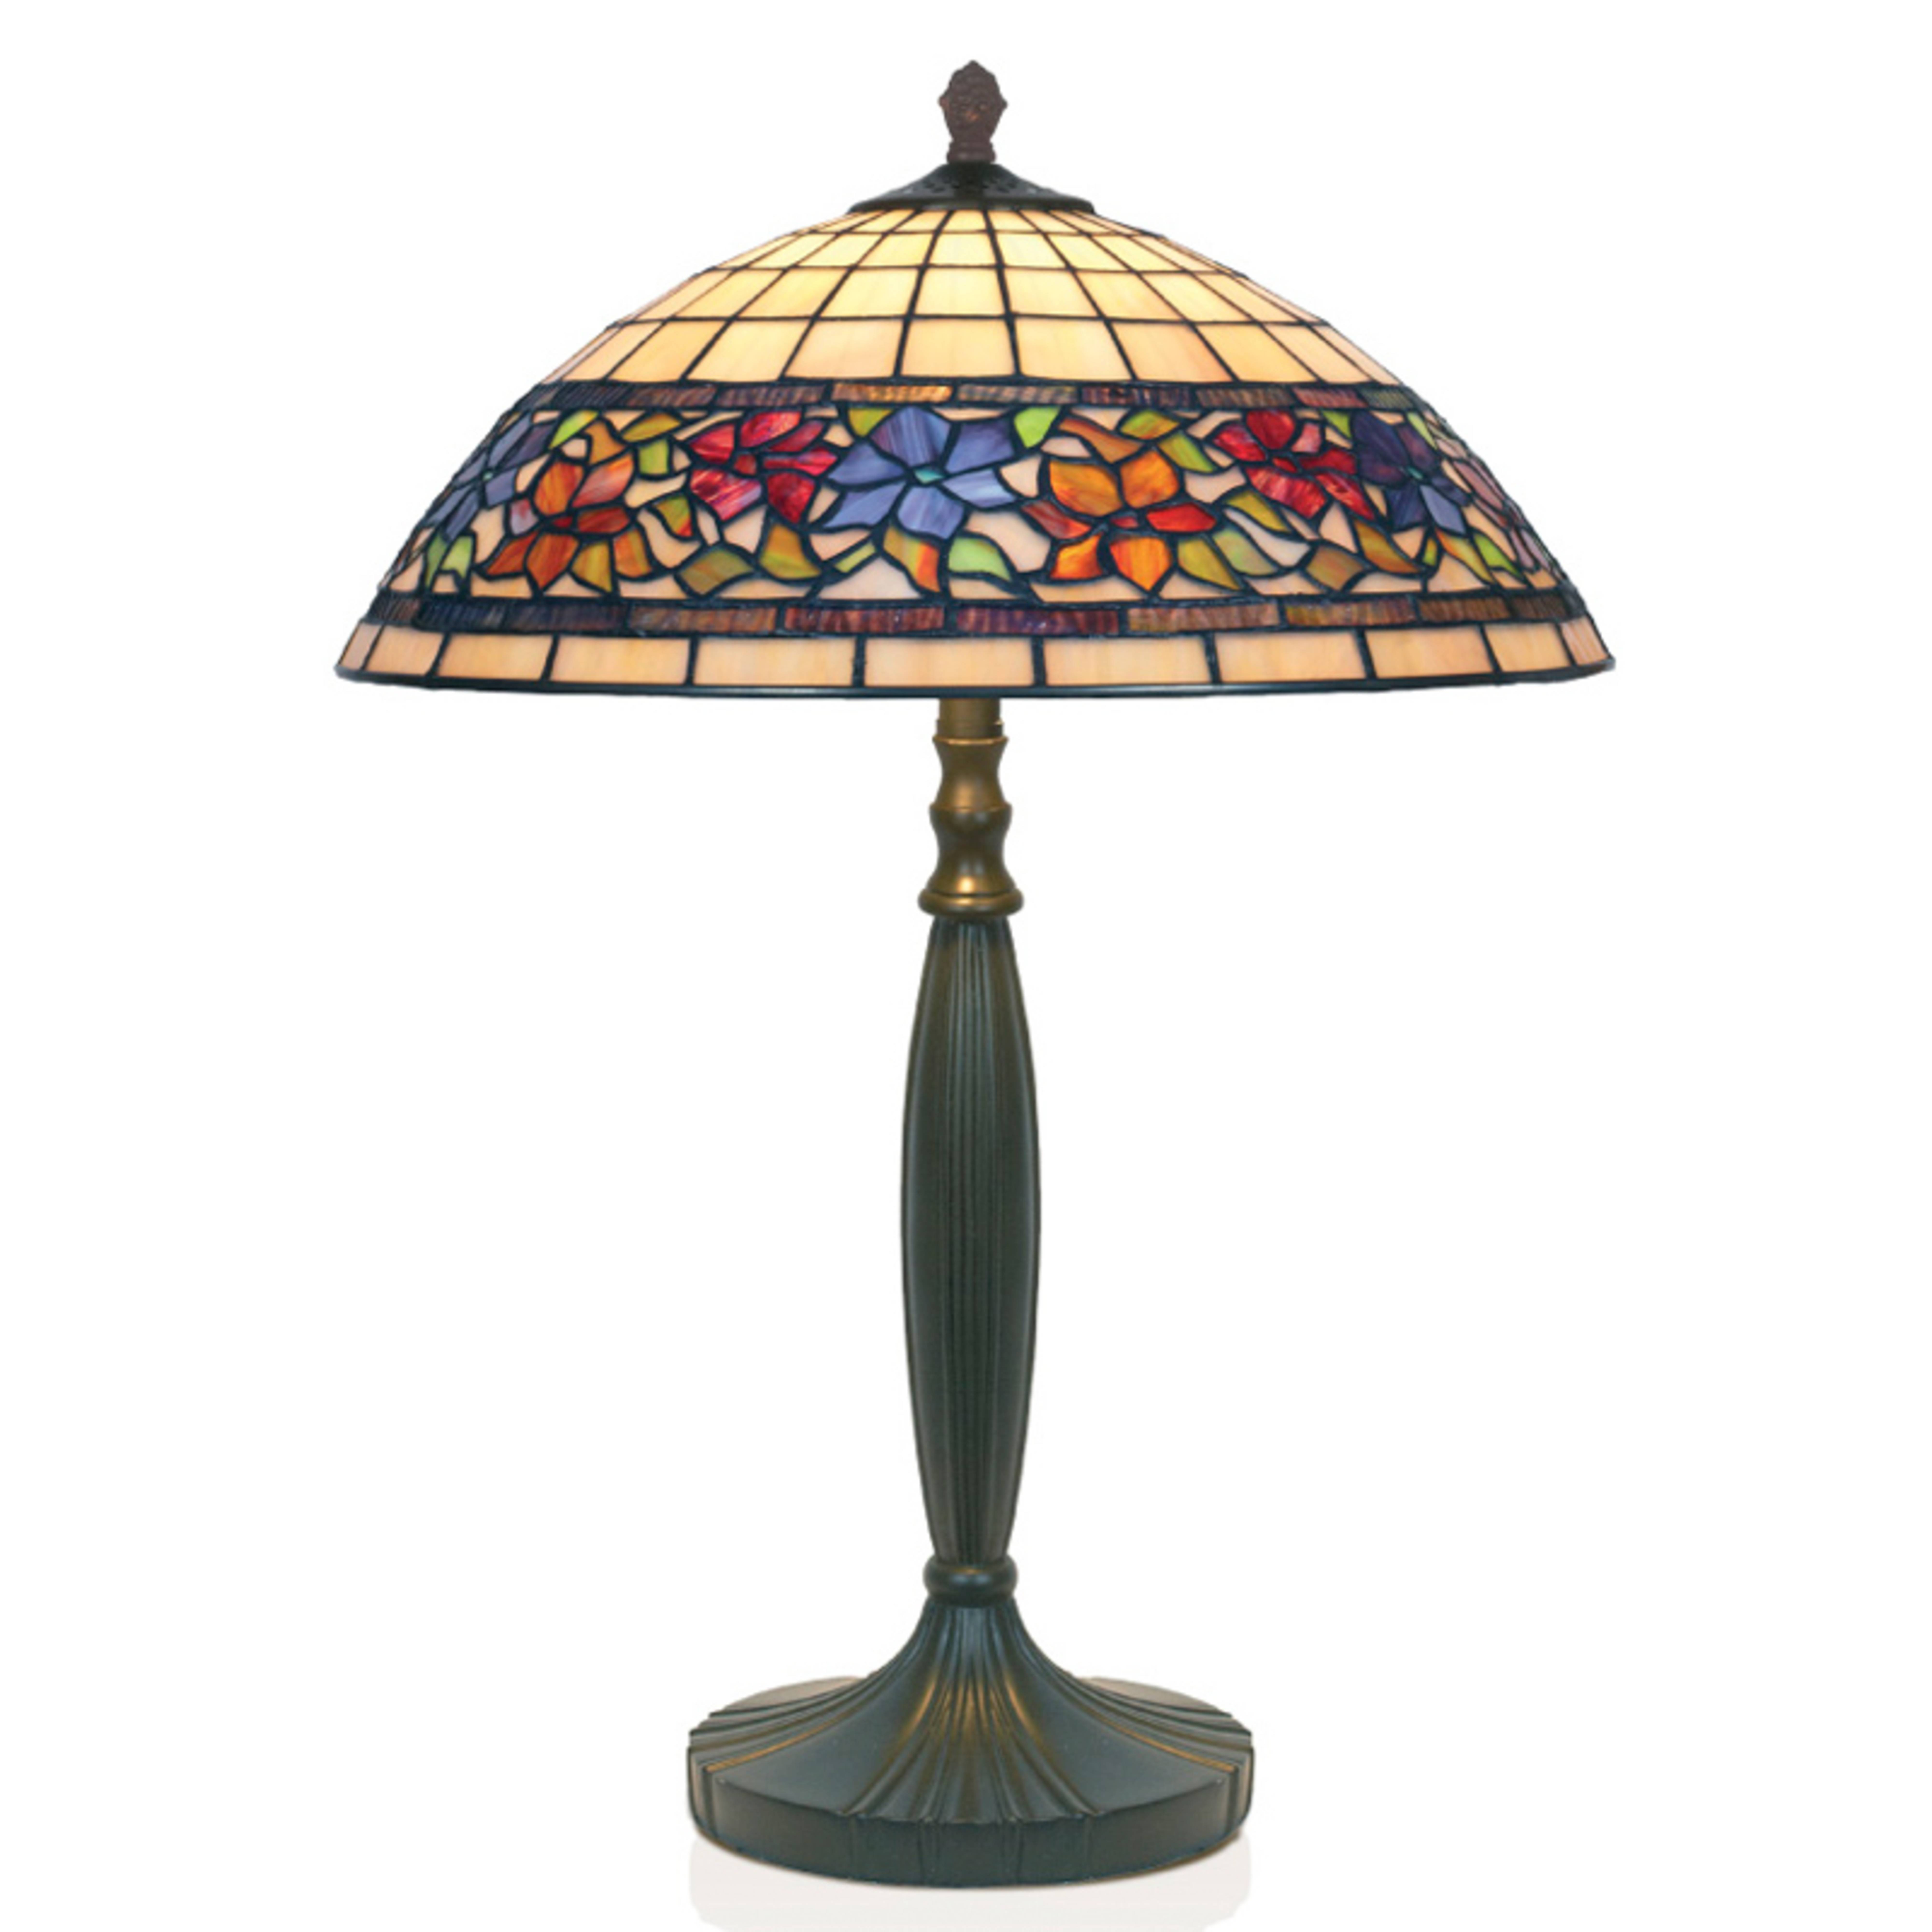 Flora tafellamp in Tiffany stijl, open aan de onderkant, 62cm